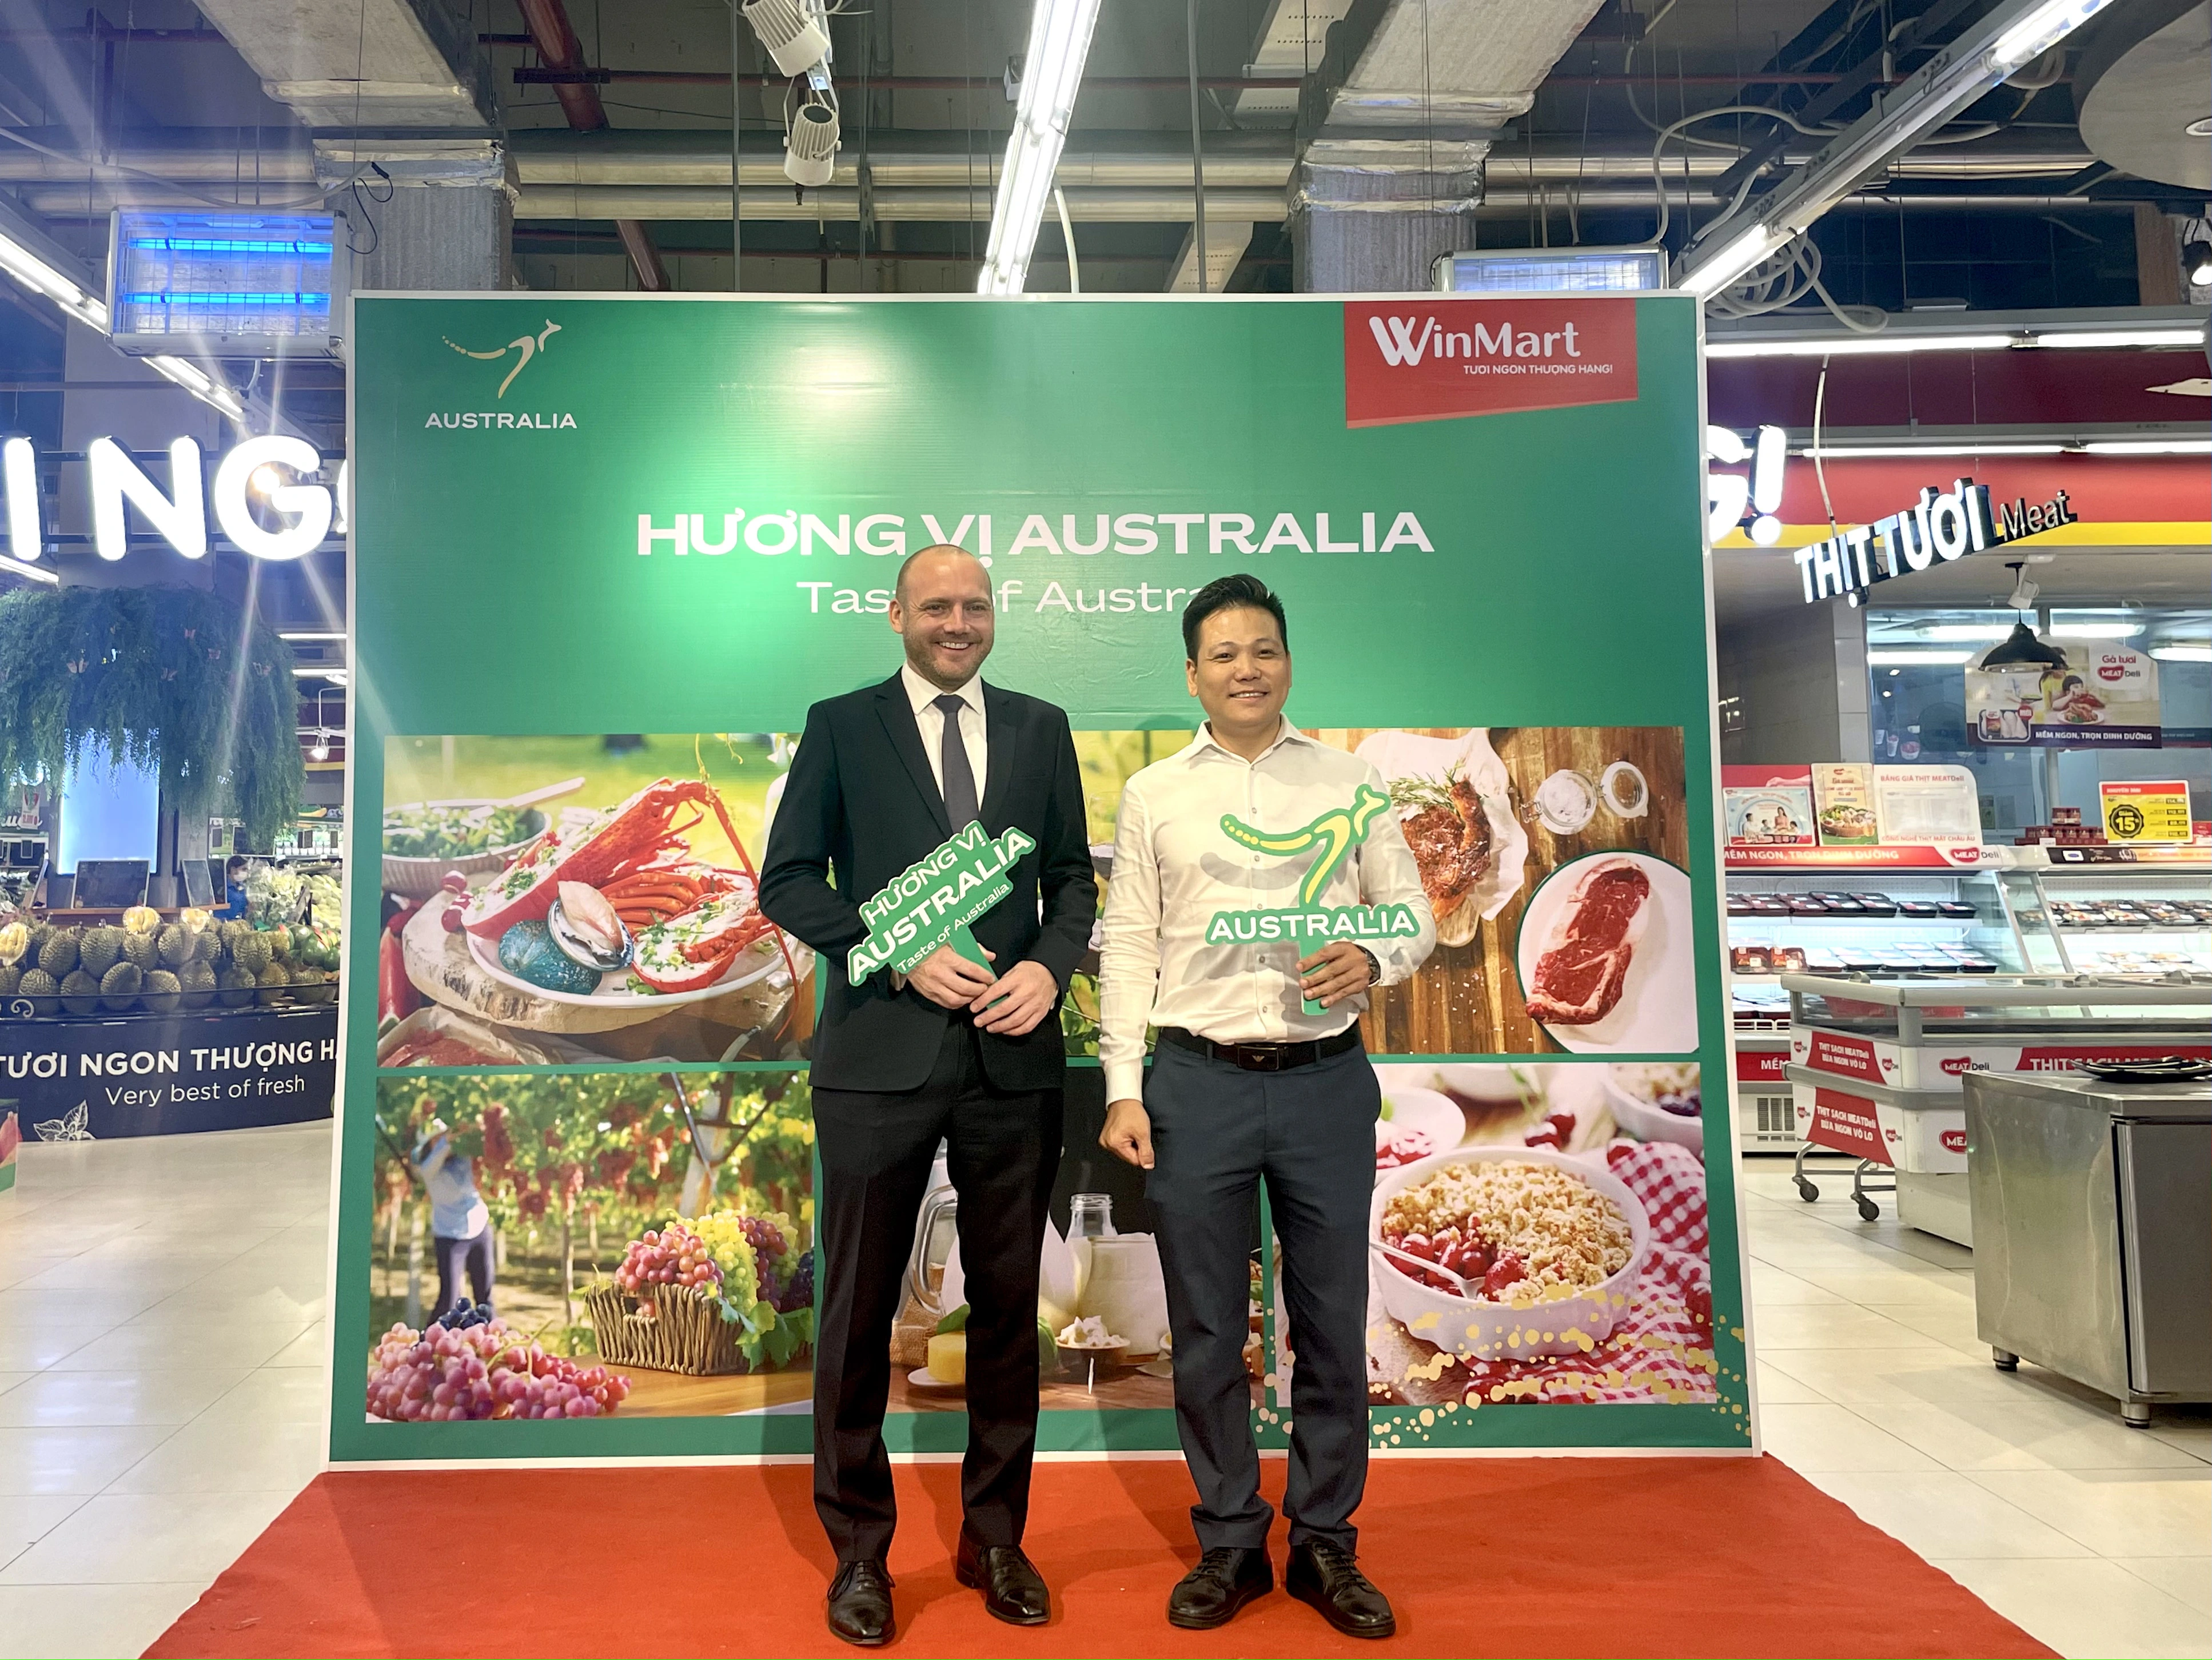 Lễ hội Hương vị Australia 2022 tại WinMart thu hút khách hàng